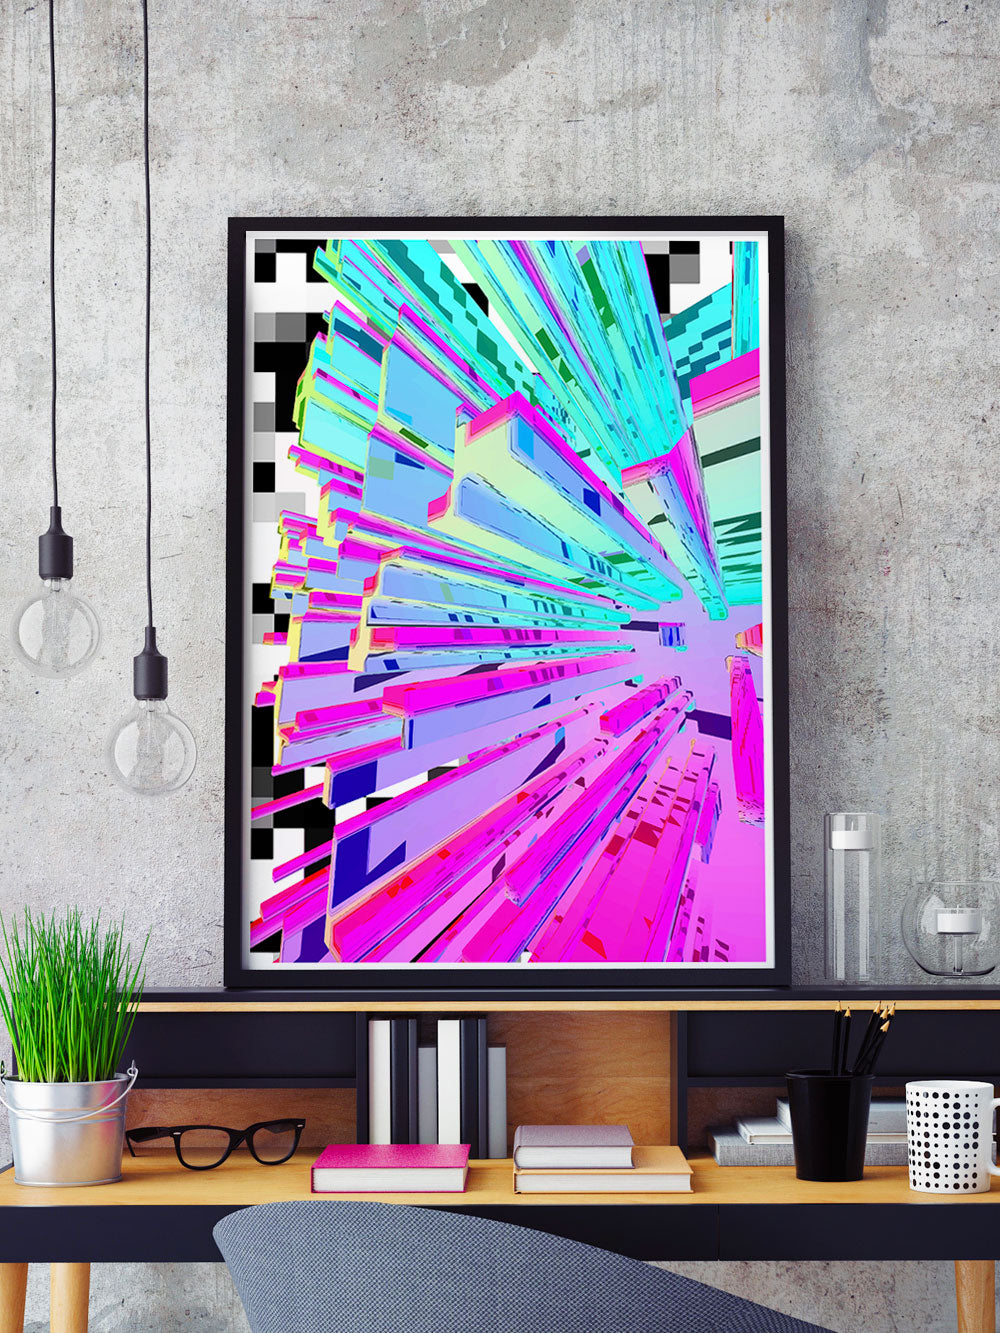 Pixel Crystal Glitch Wall Art in a frame on a shelf